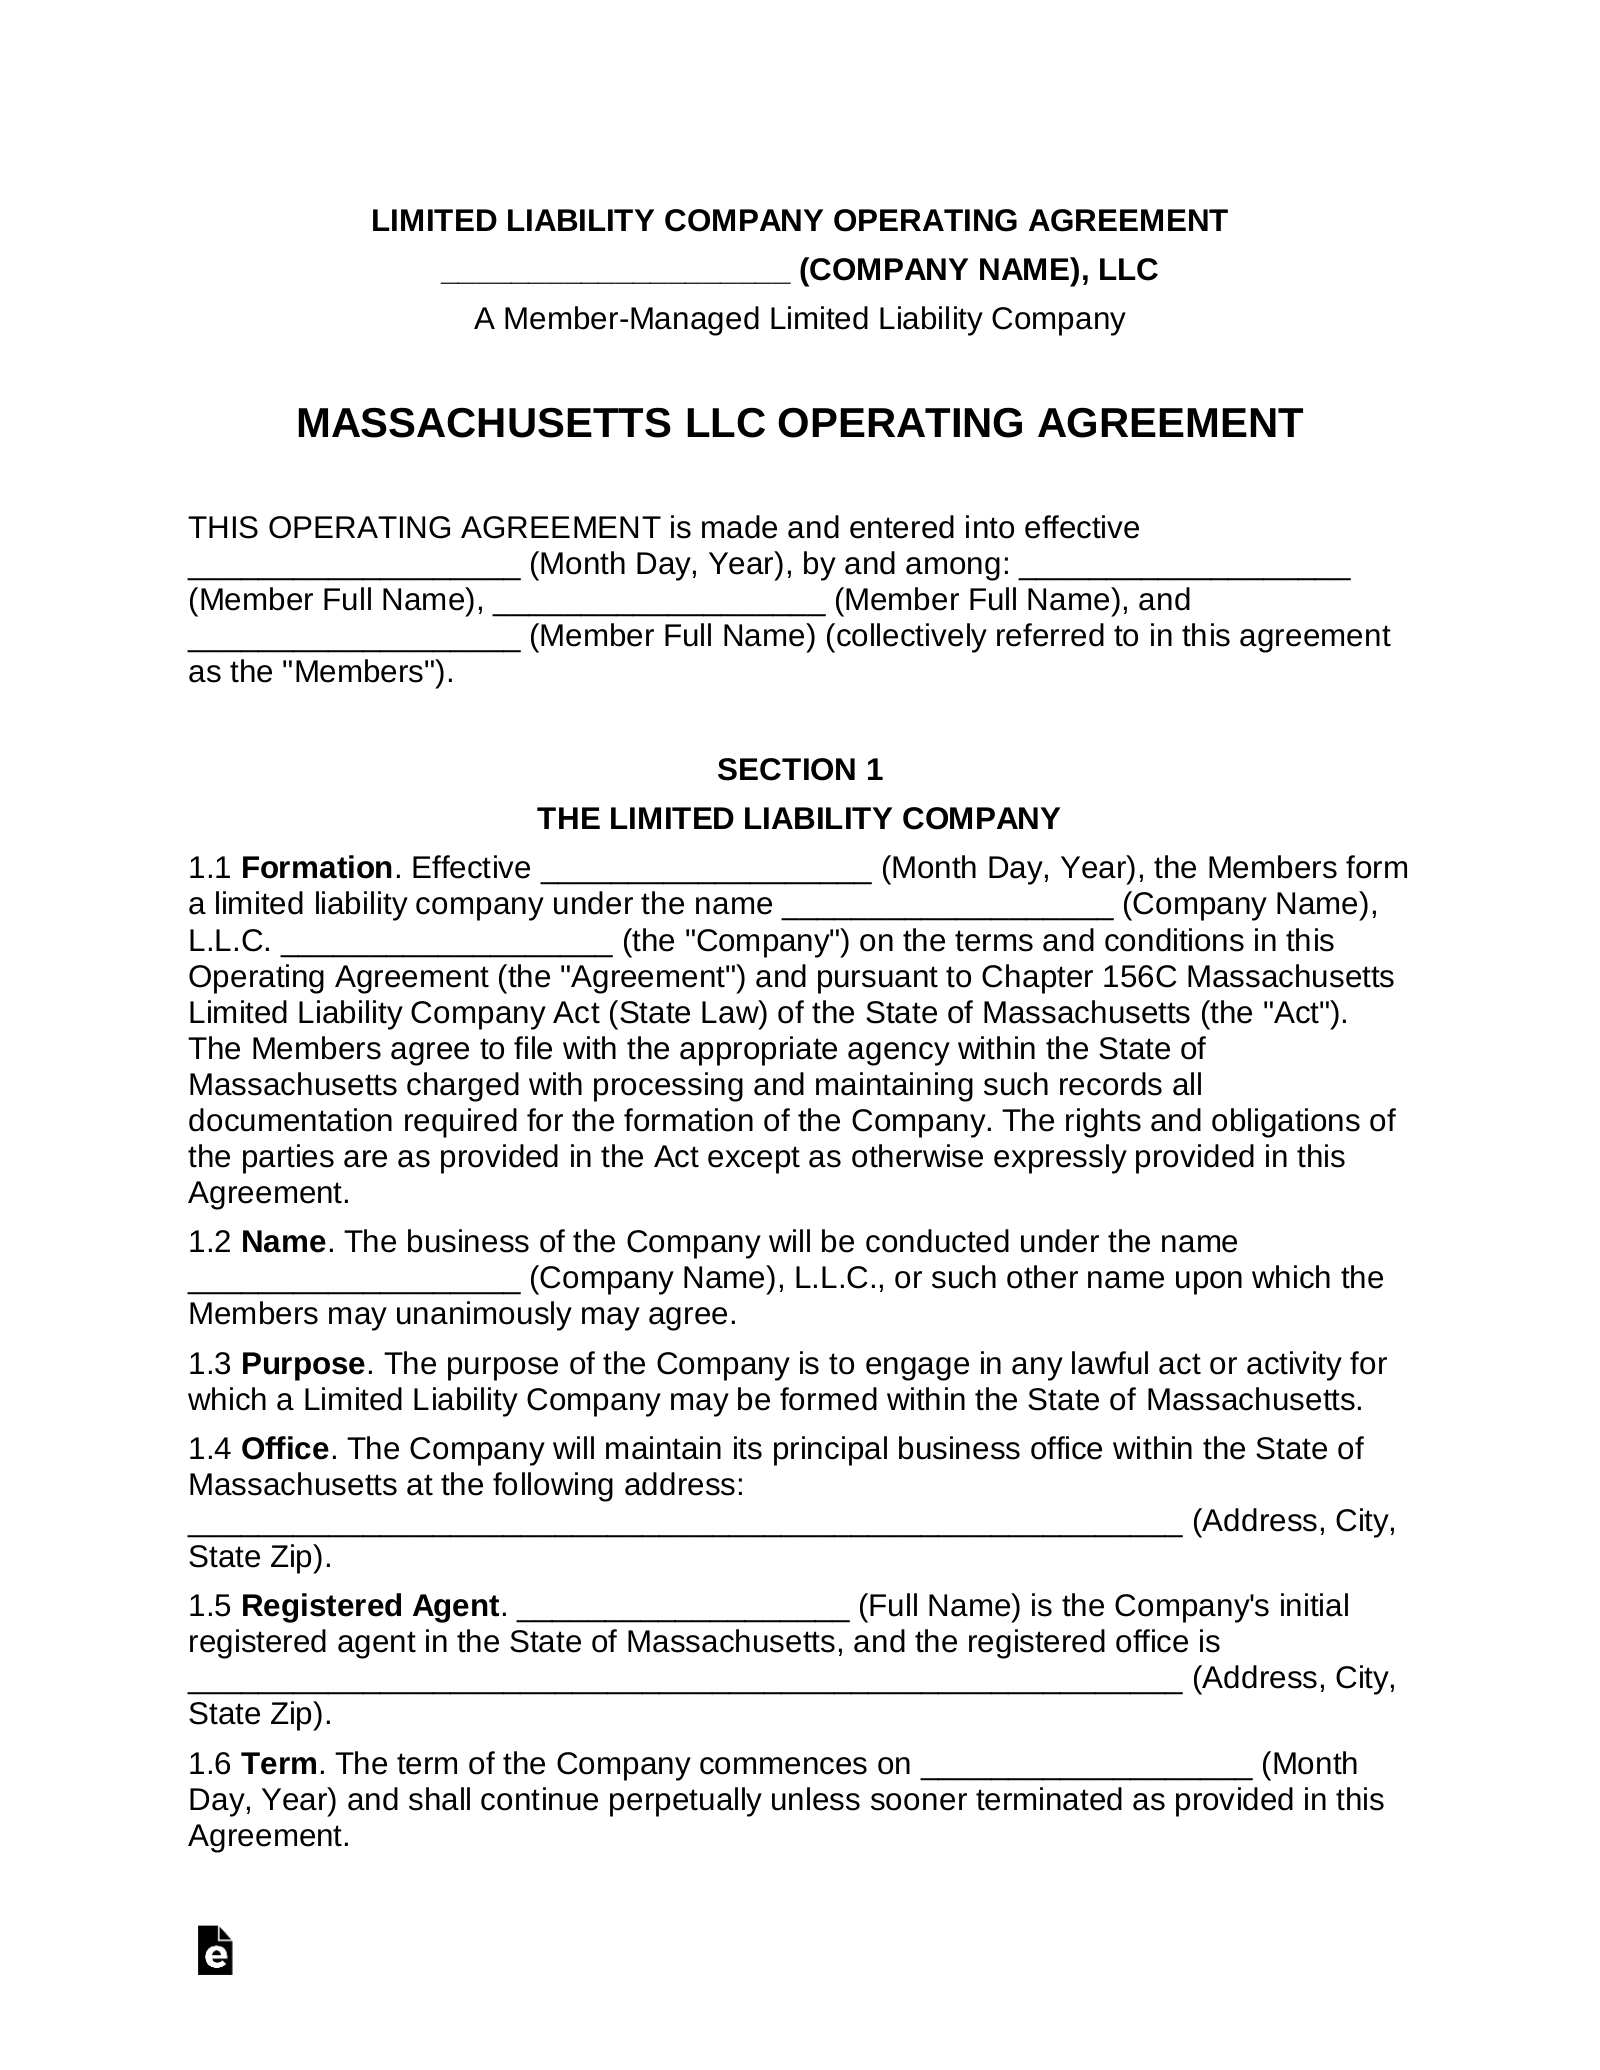 Massachusetts Multi-Member LLC Operating Agreement Form